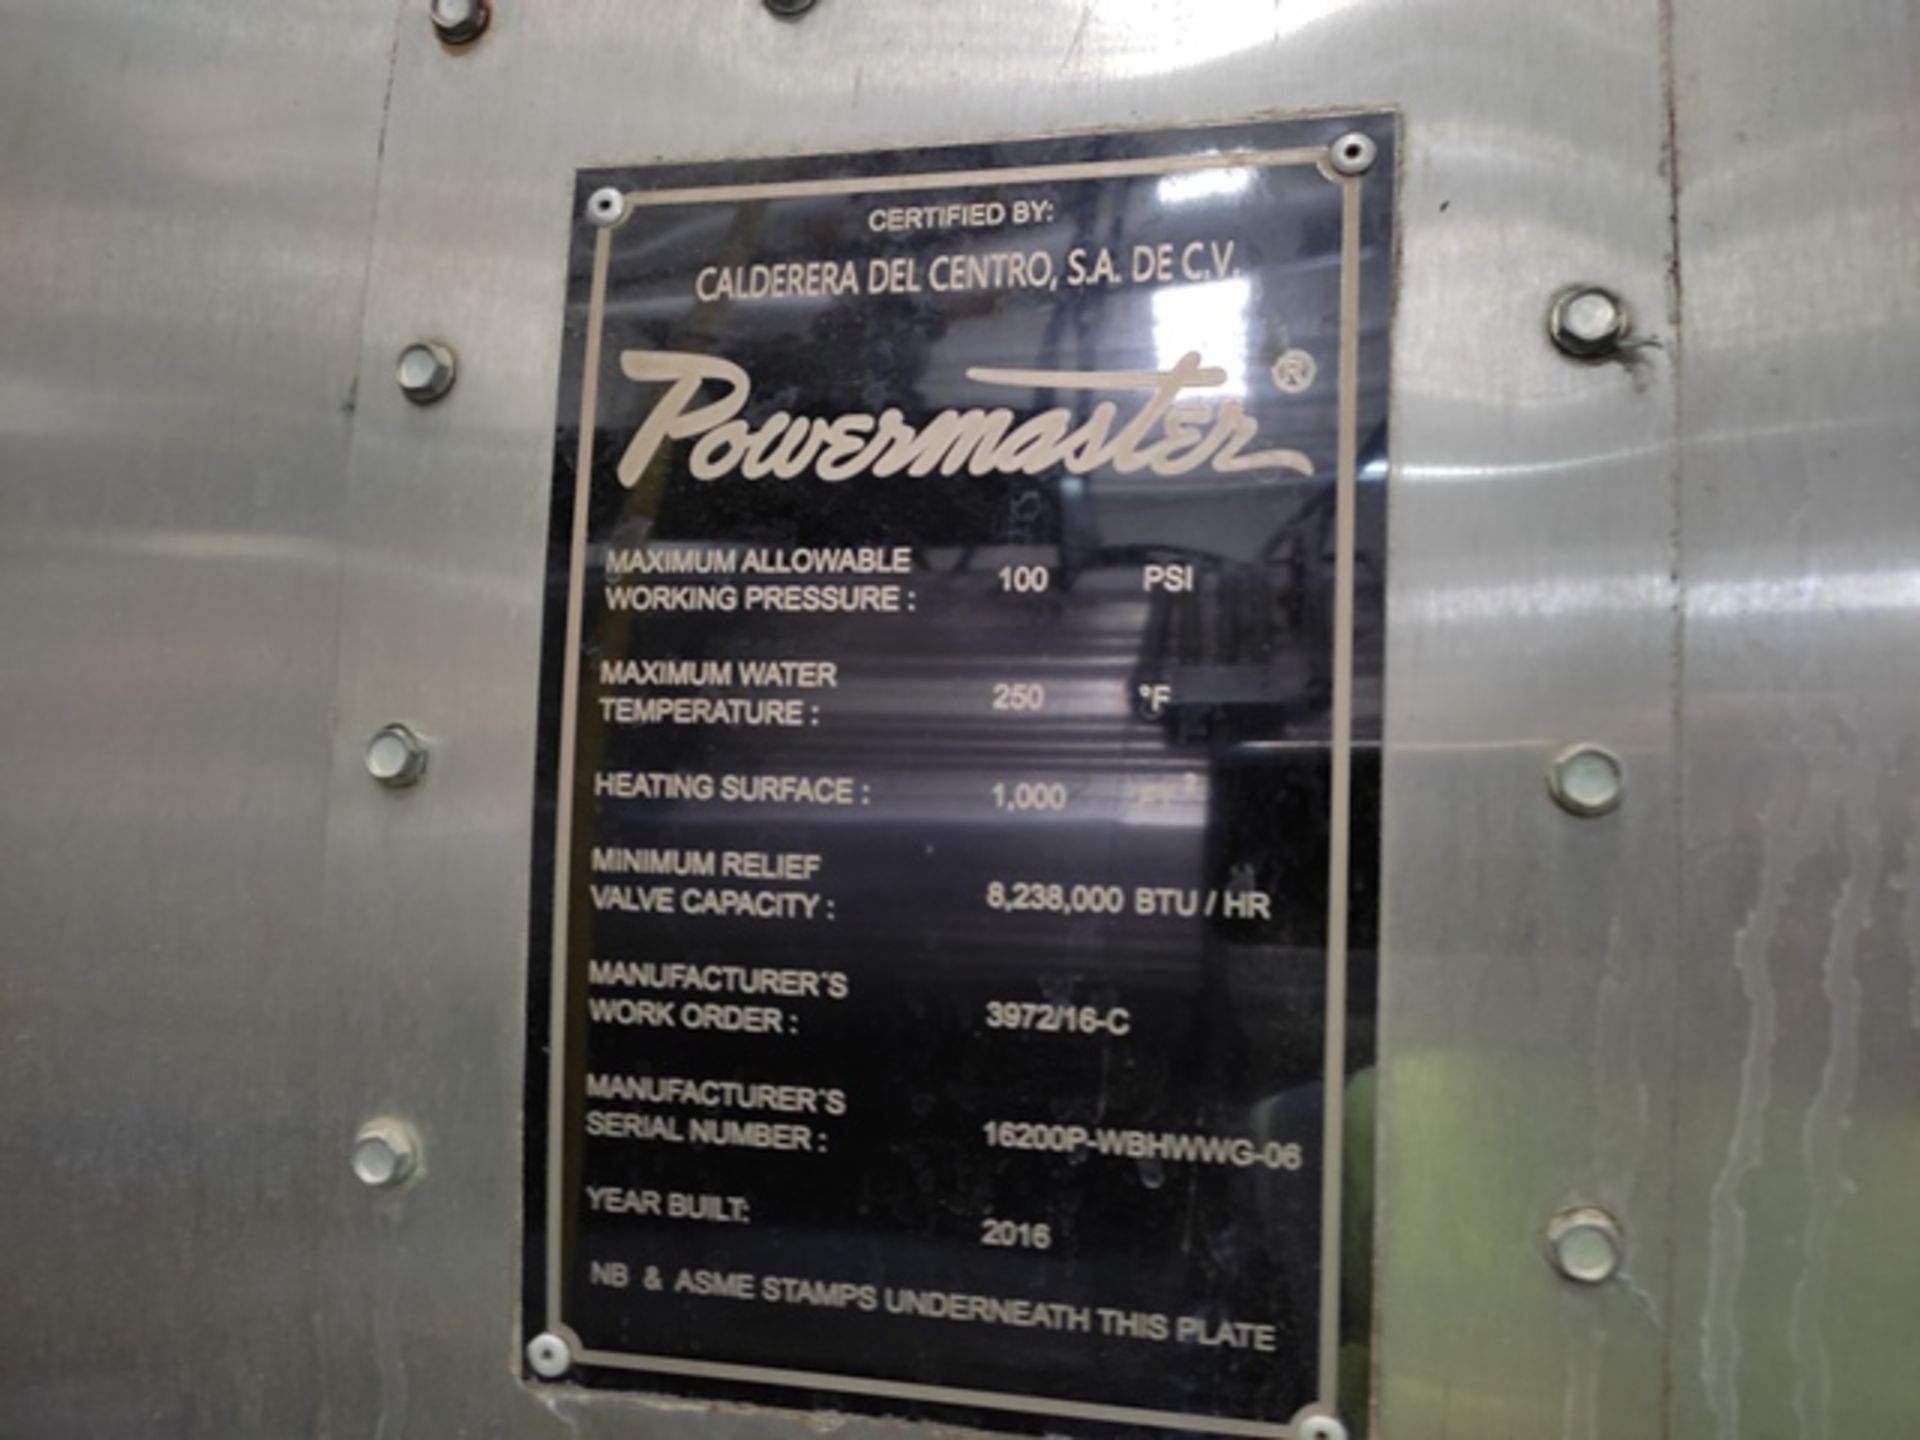 Powermaster WB-2A-3P-HW (FMG) 1'687,200 KCAL/H At 3.2 Kg/Cm2 Boiler; Year: 2016 - Image 10 of 15